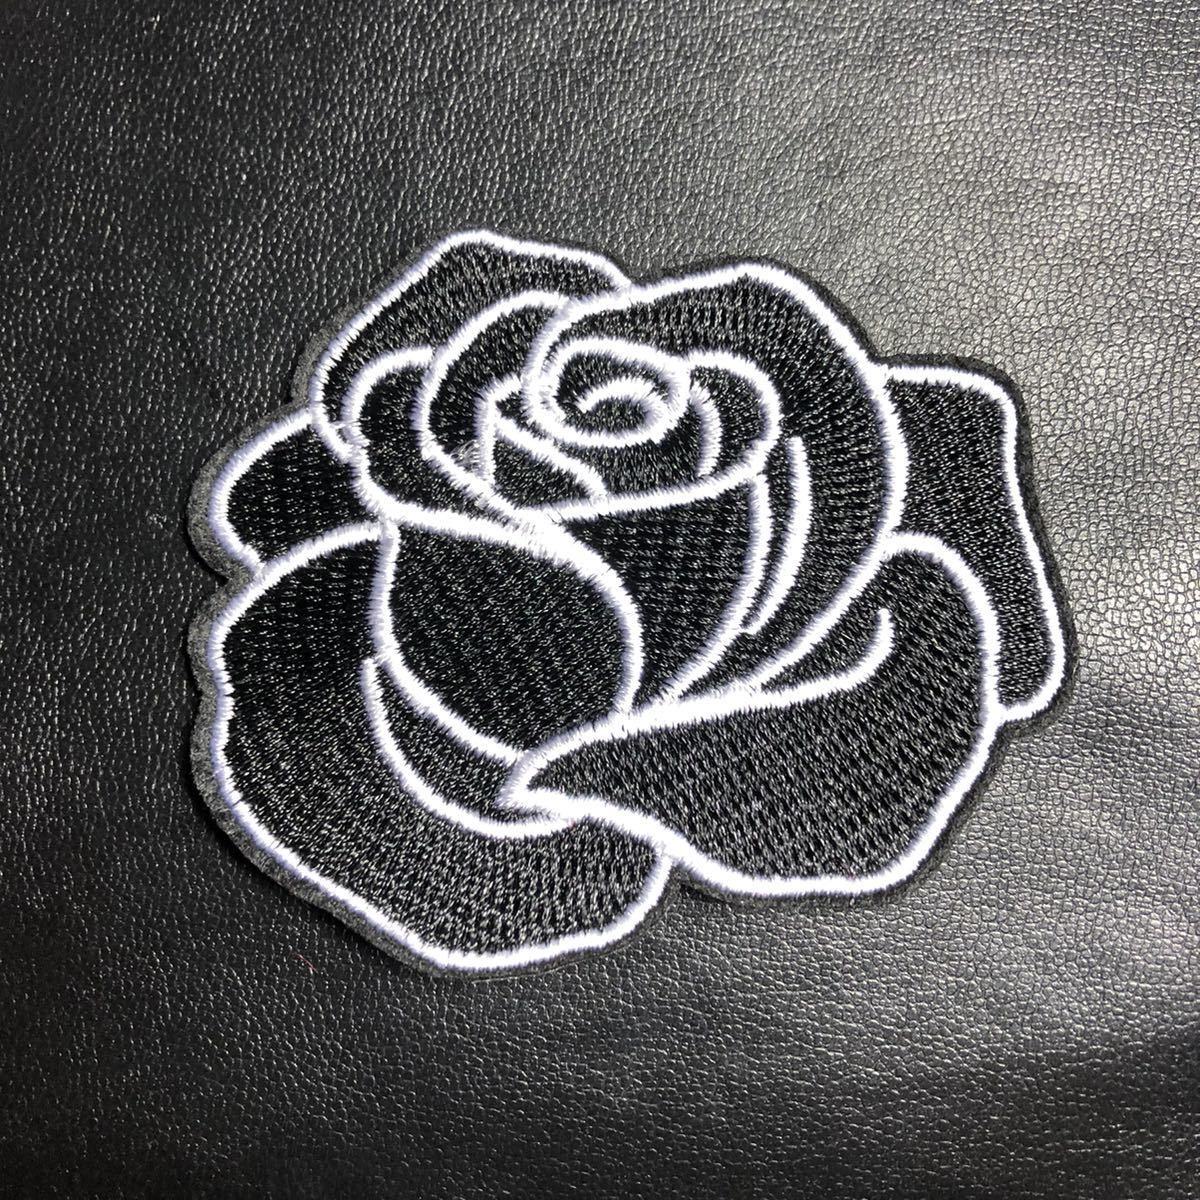 【ワッペン】薔薇 バラ ローズ ブラック ホワイト 刺繍 メンズ ジーンズ パンク ジャケット アイロン 【アップリケ】